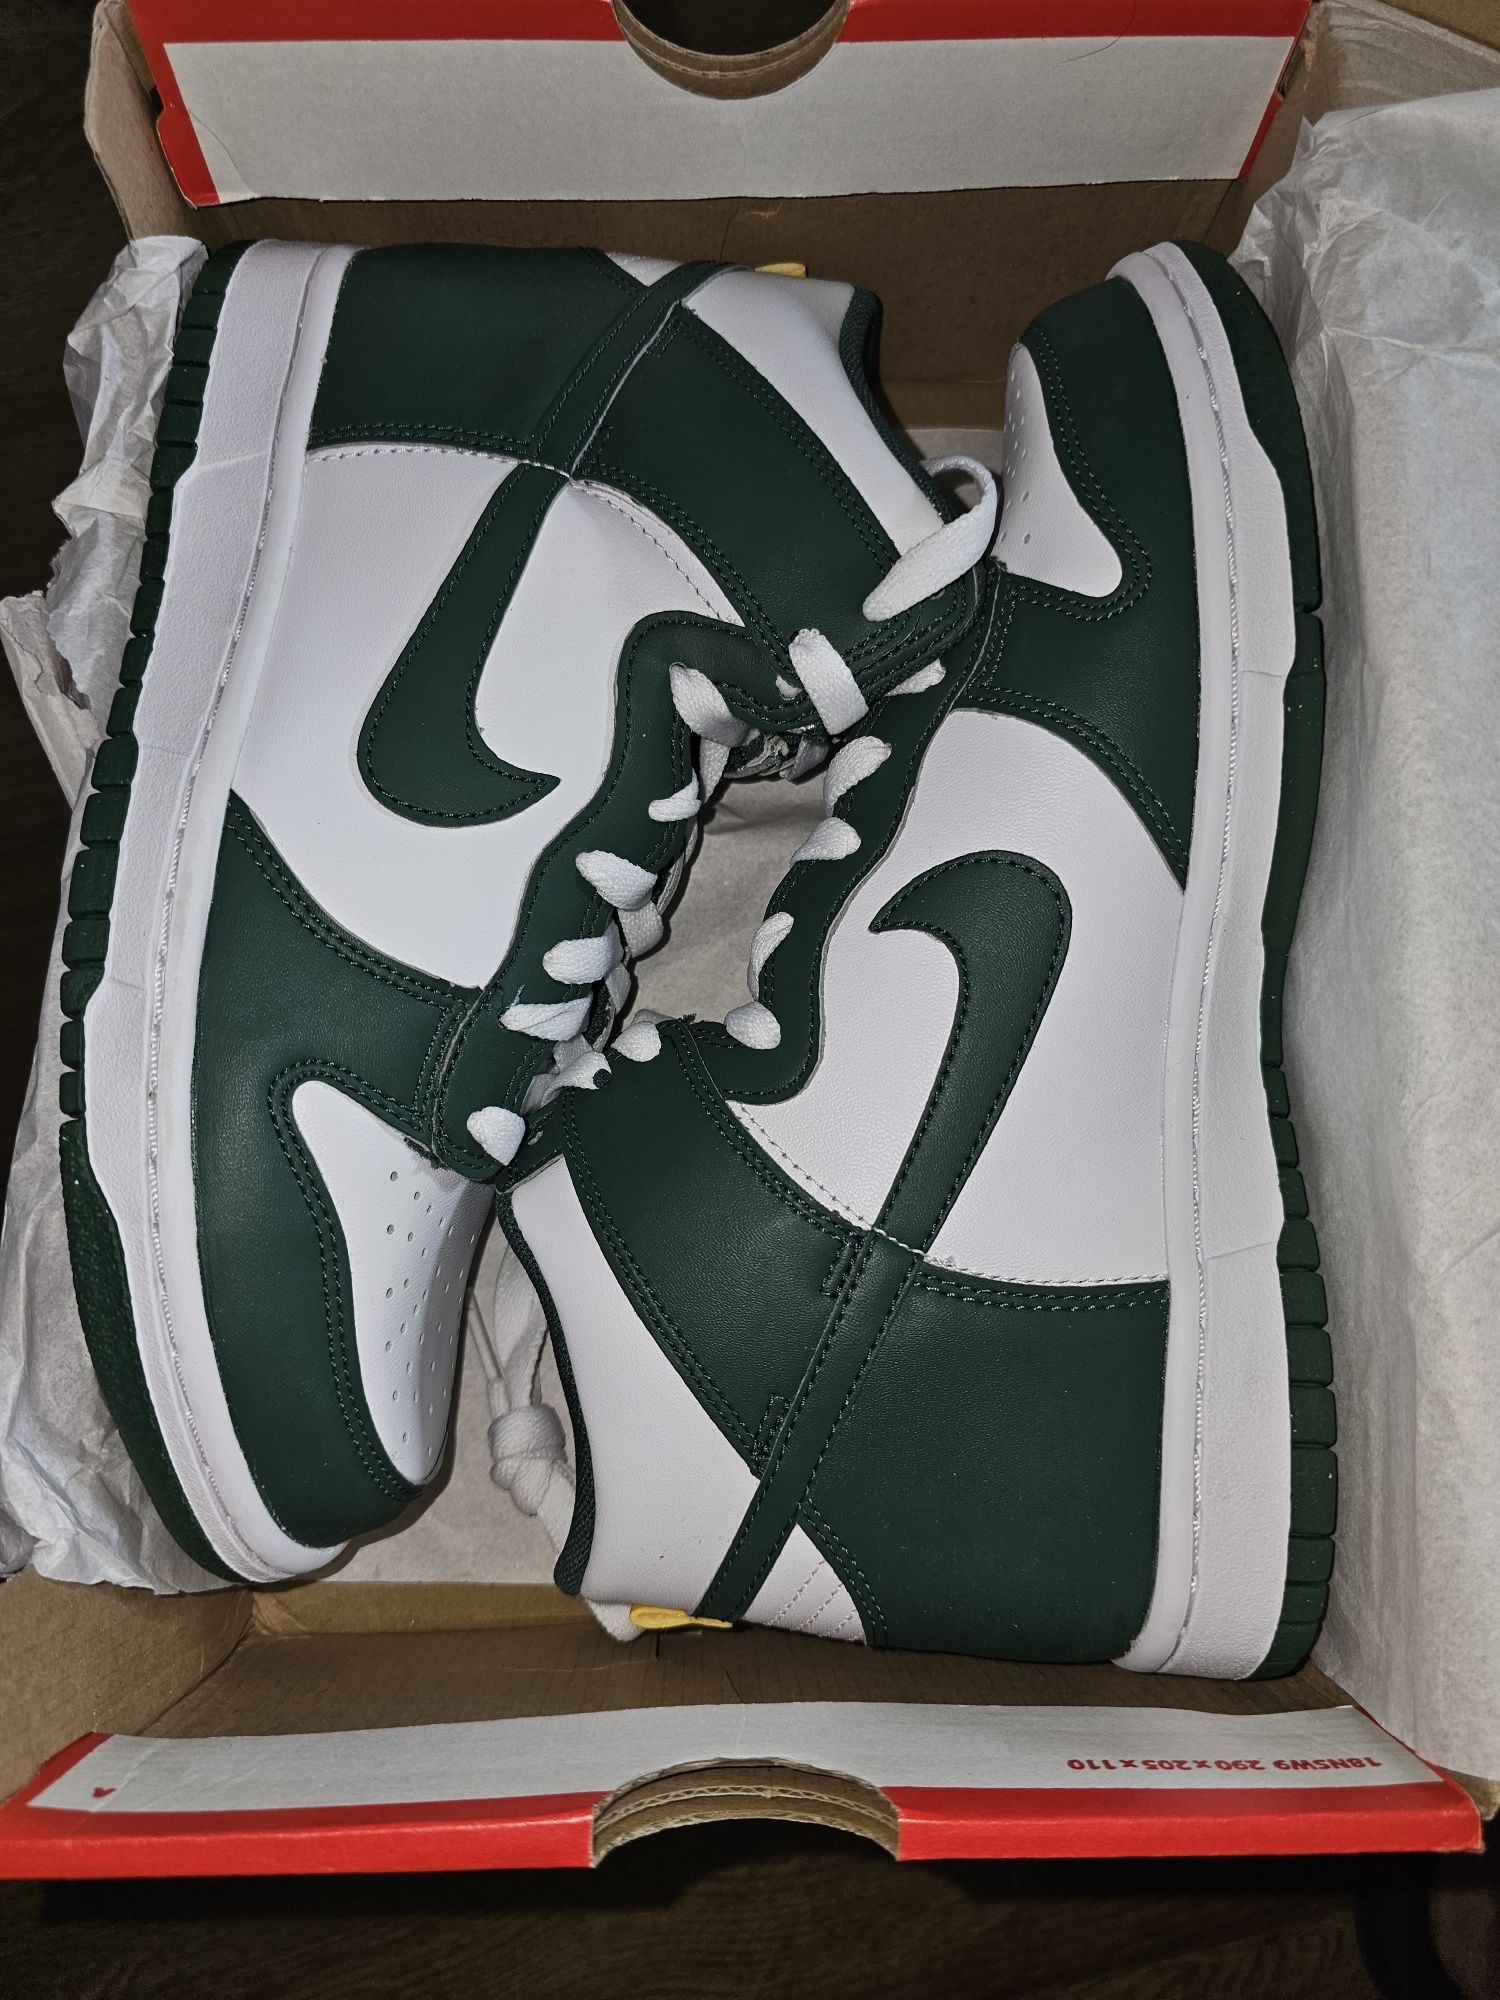 Nike Dunk High Gs green